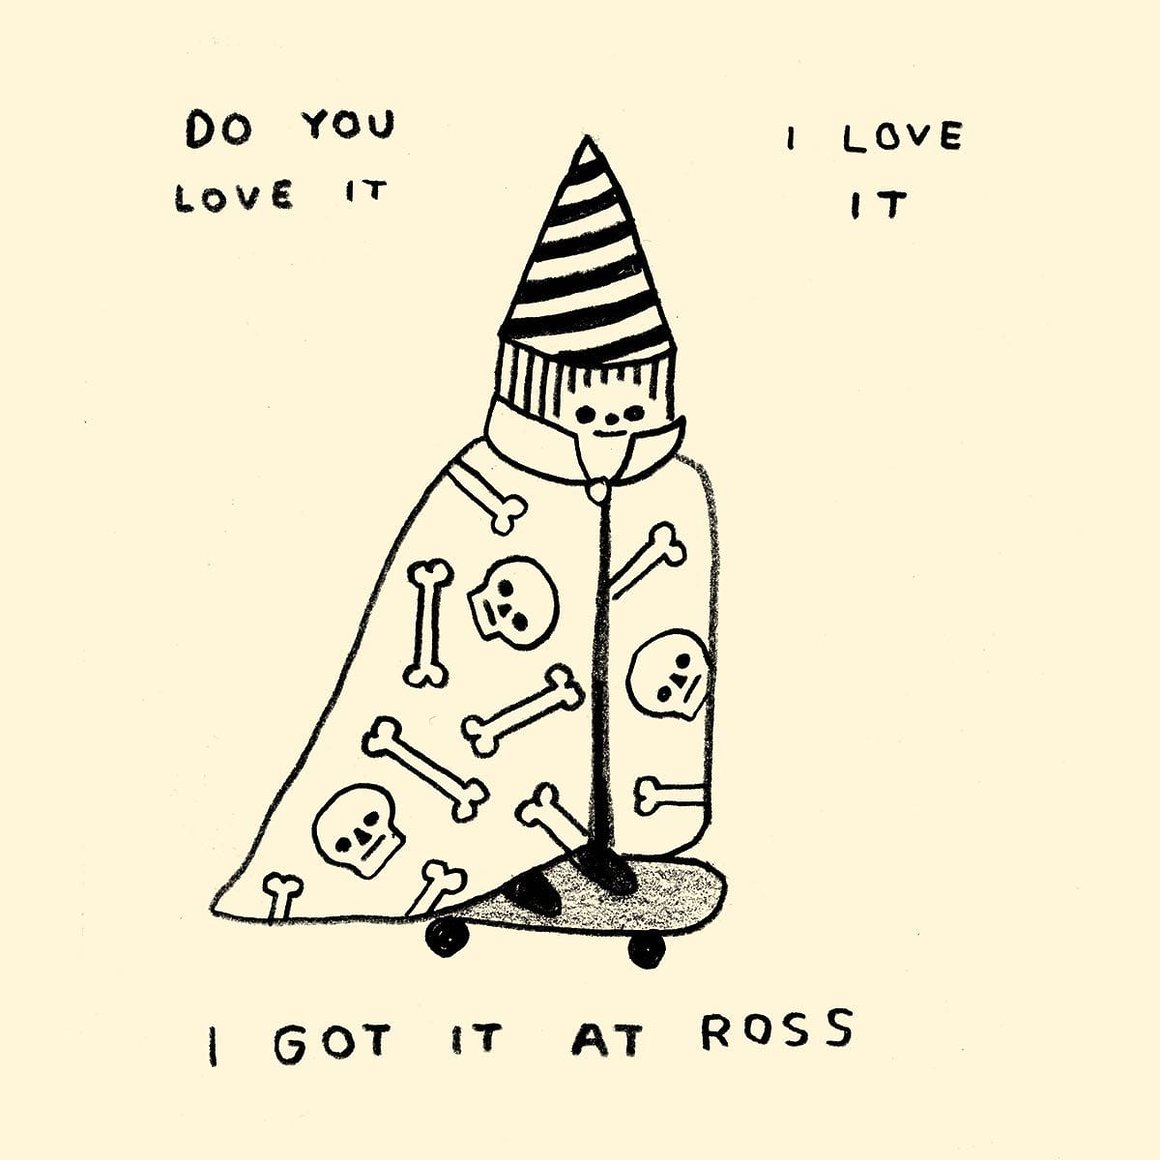 Dessin d'un enfant sur un skate vêtu d'une cape avec des têtes de mort et un chapeau pointu à rayures. On peut y lire " I gout it at Ross" ; "Do you love it"; "I love it"